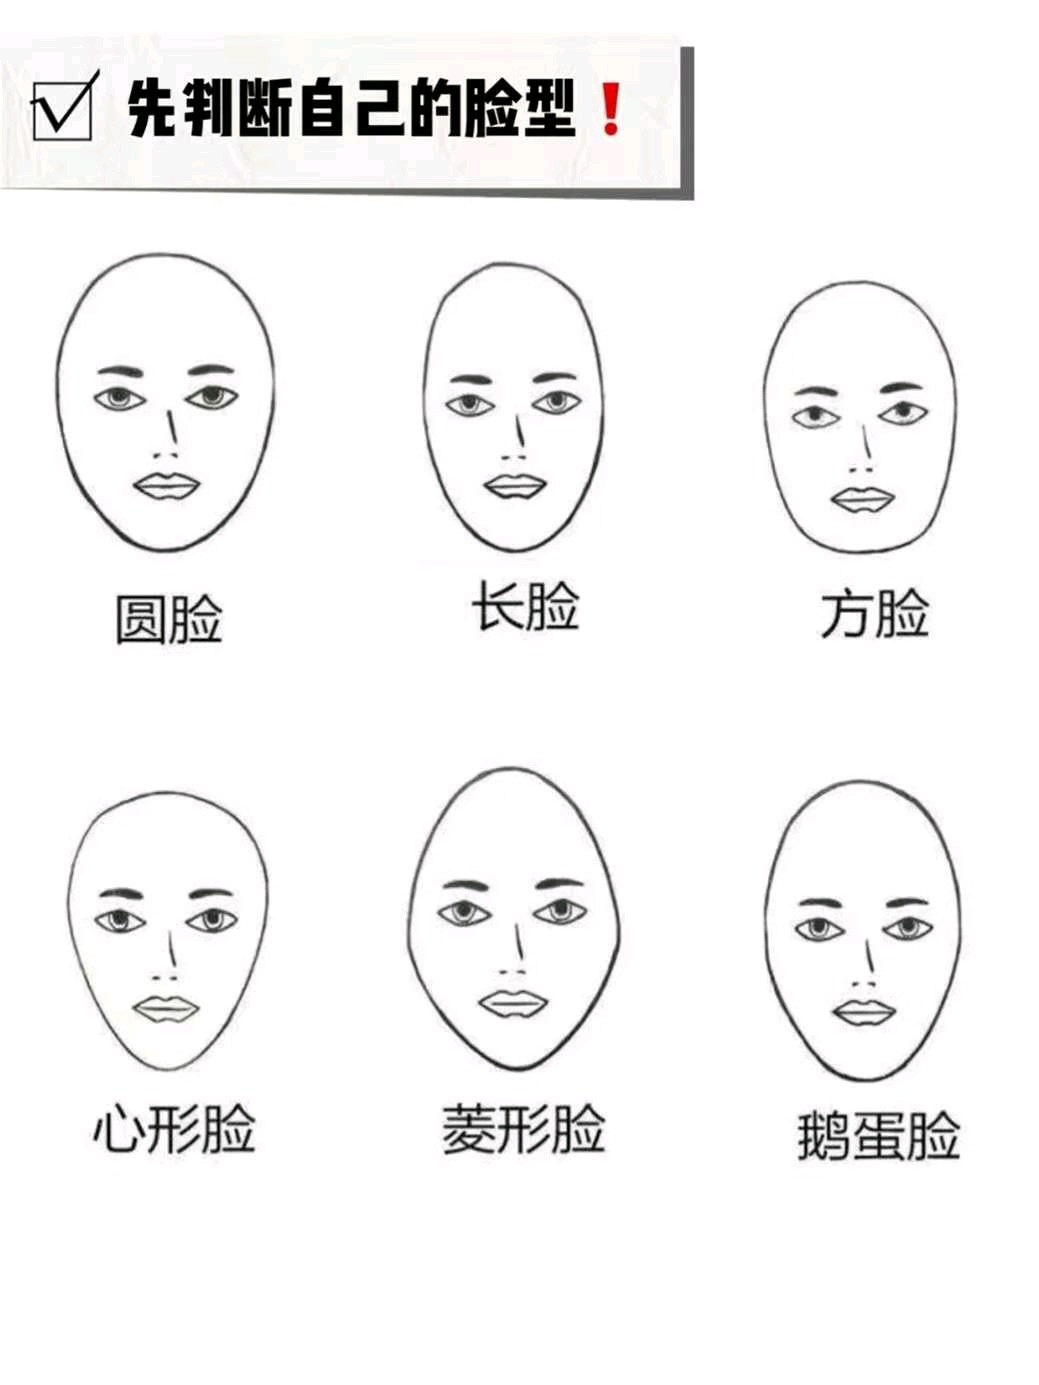 修容一定要根据自己的脸型来做相应的调整,不知道自己是什么脸型?